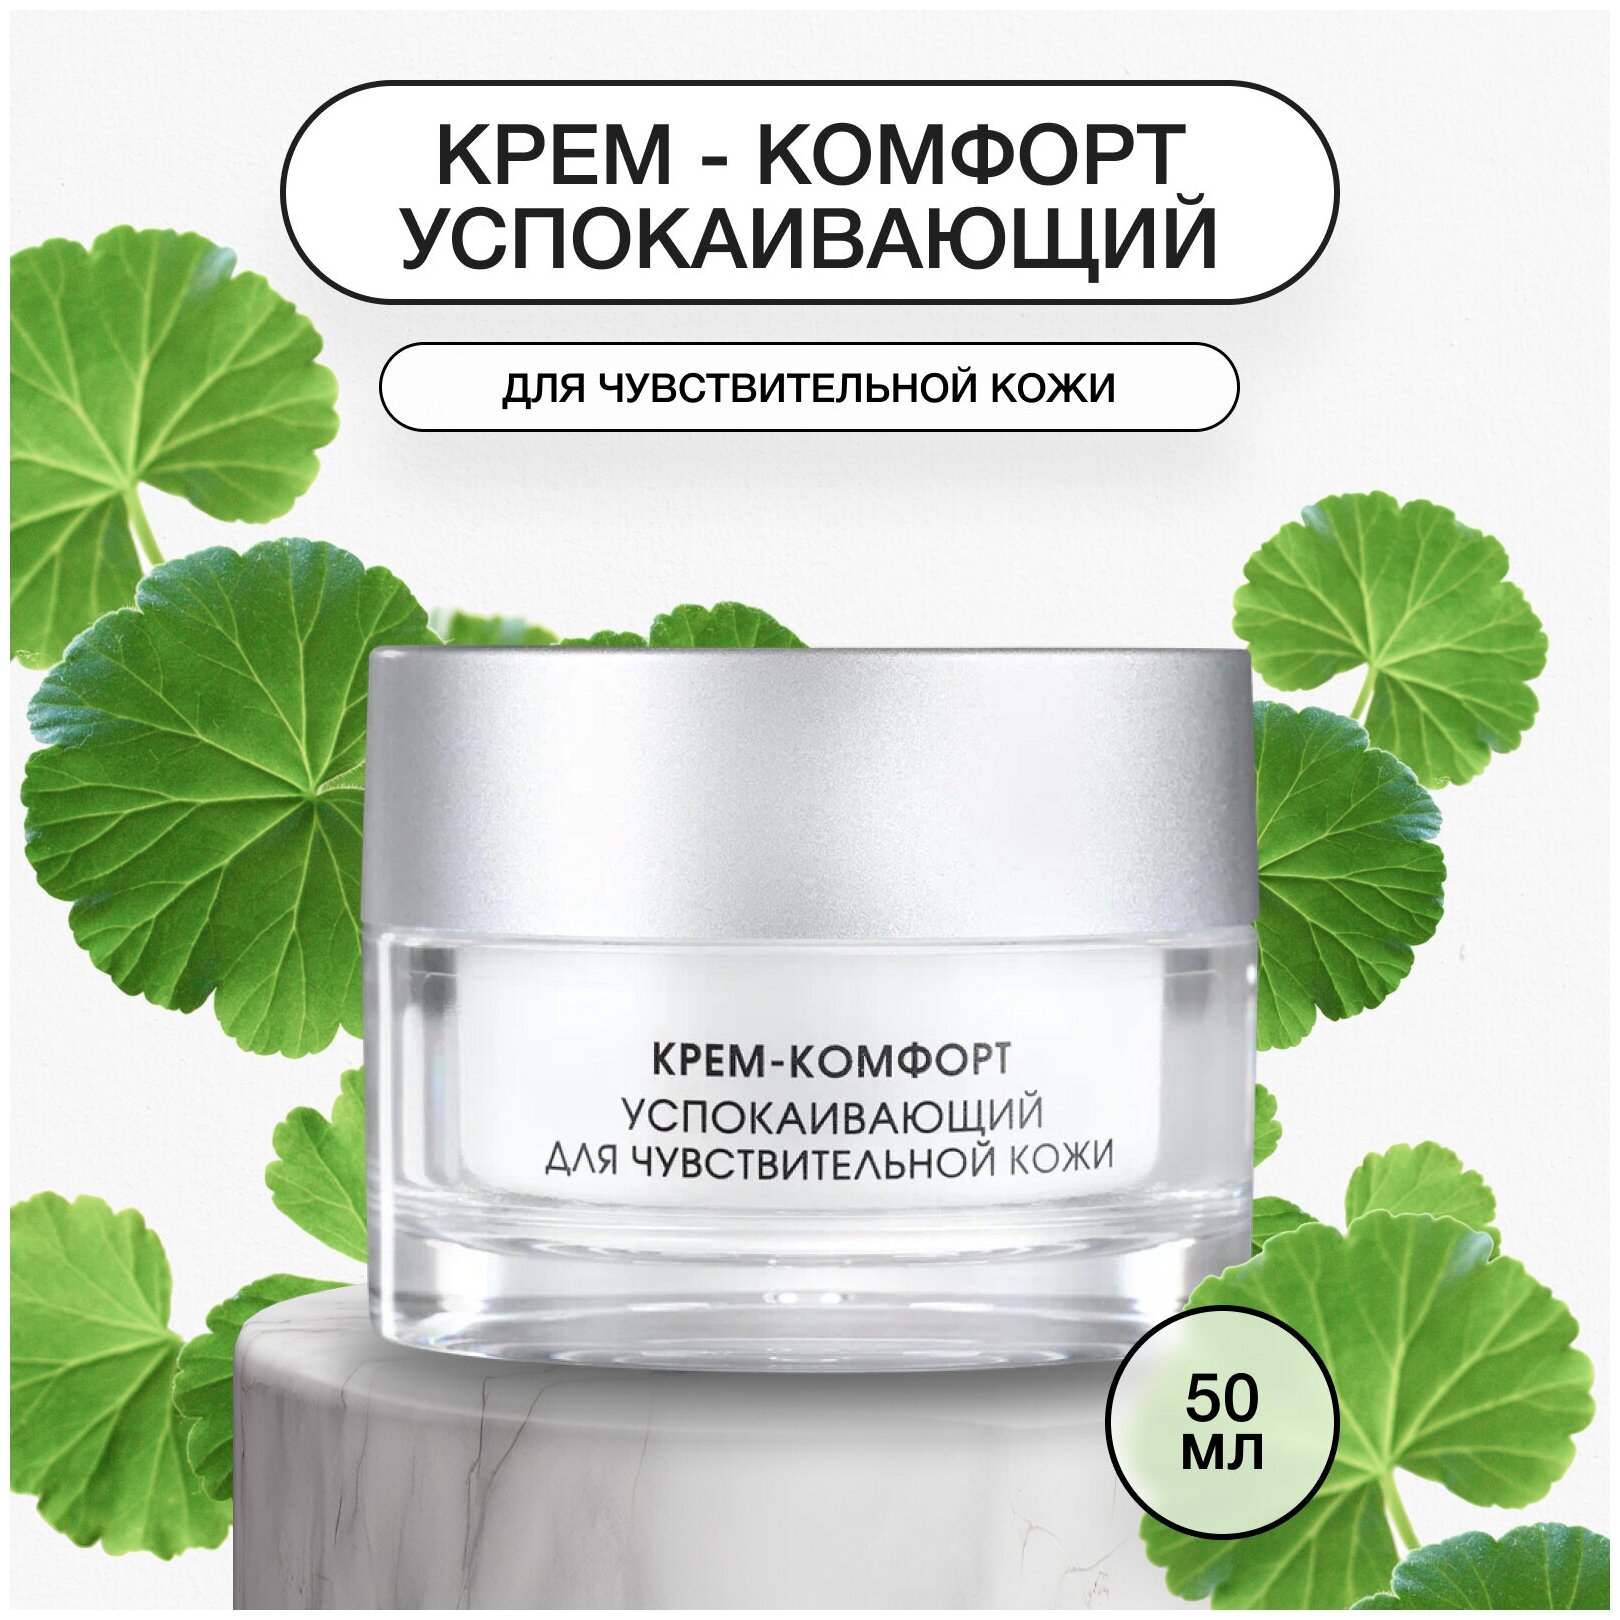 Kora Phytocosmetics Крем-комфорт успокаивающий для чувствительной кожи, 50 мл